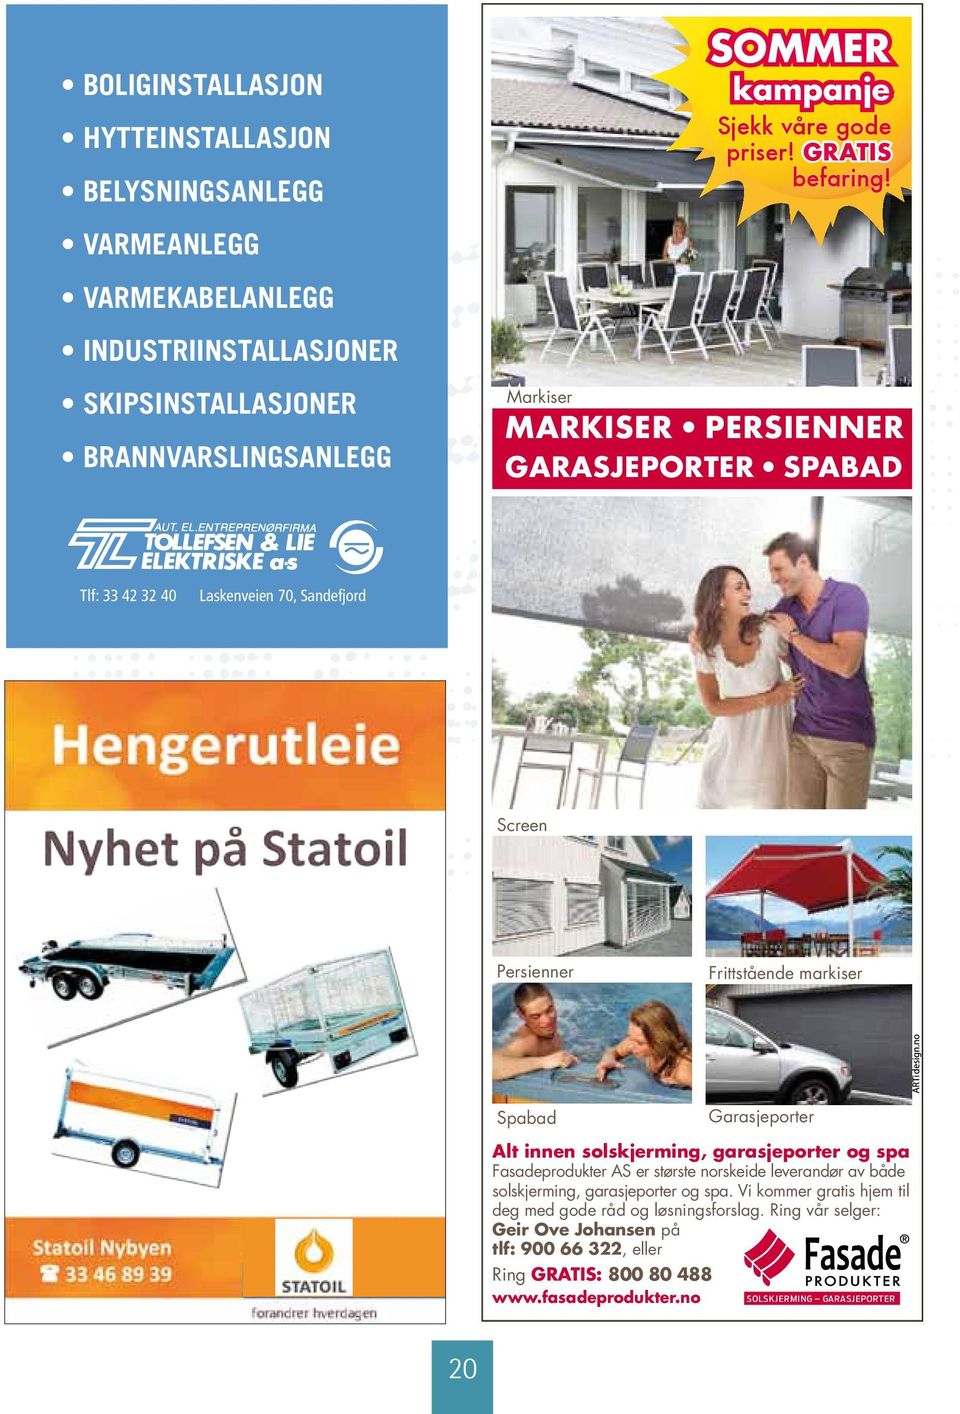 Statoil Søeberg Screen Persienner Frittstående markiser Spabad Garasjeporter ts nyhet: defjordskoppen!